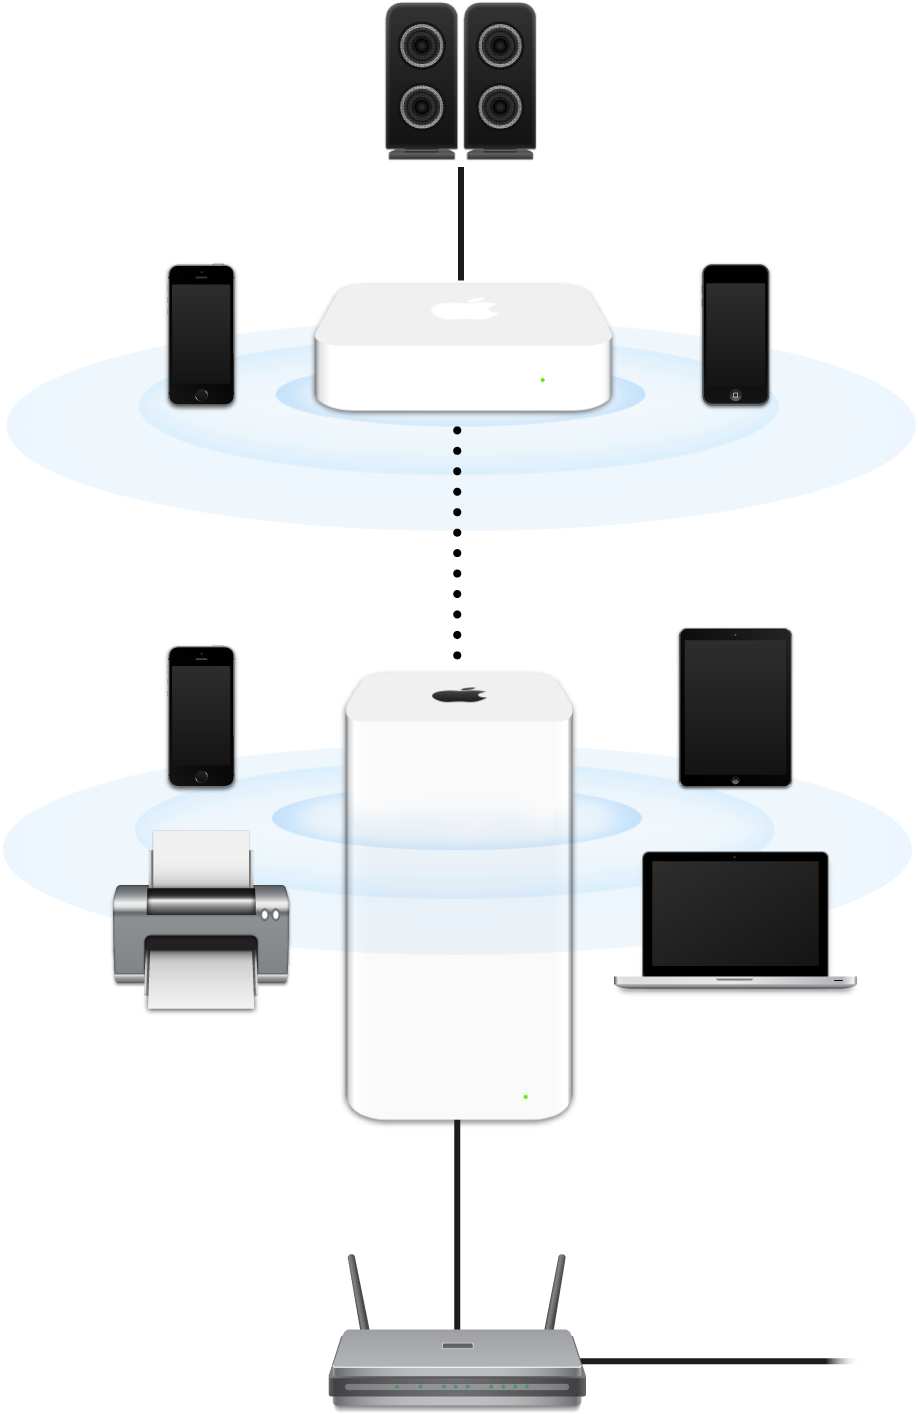 Una rete estesa, con AirPort Extreme e AirPort Express collegati a un modem e in comunicazione con vari dispositivi.